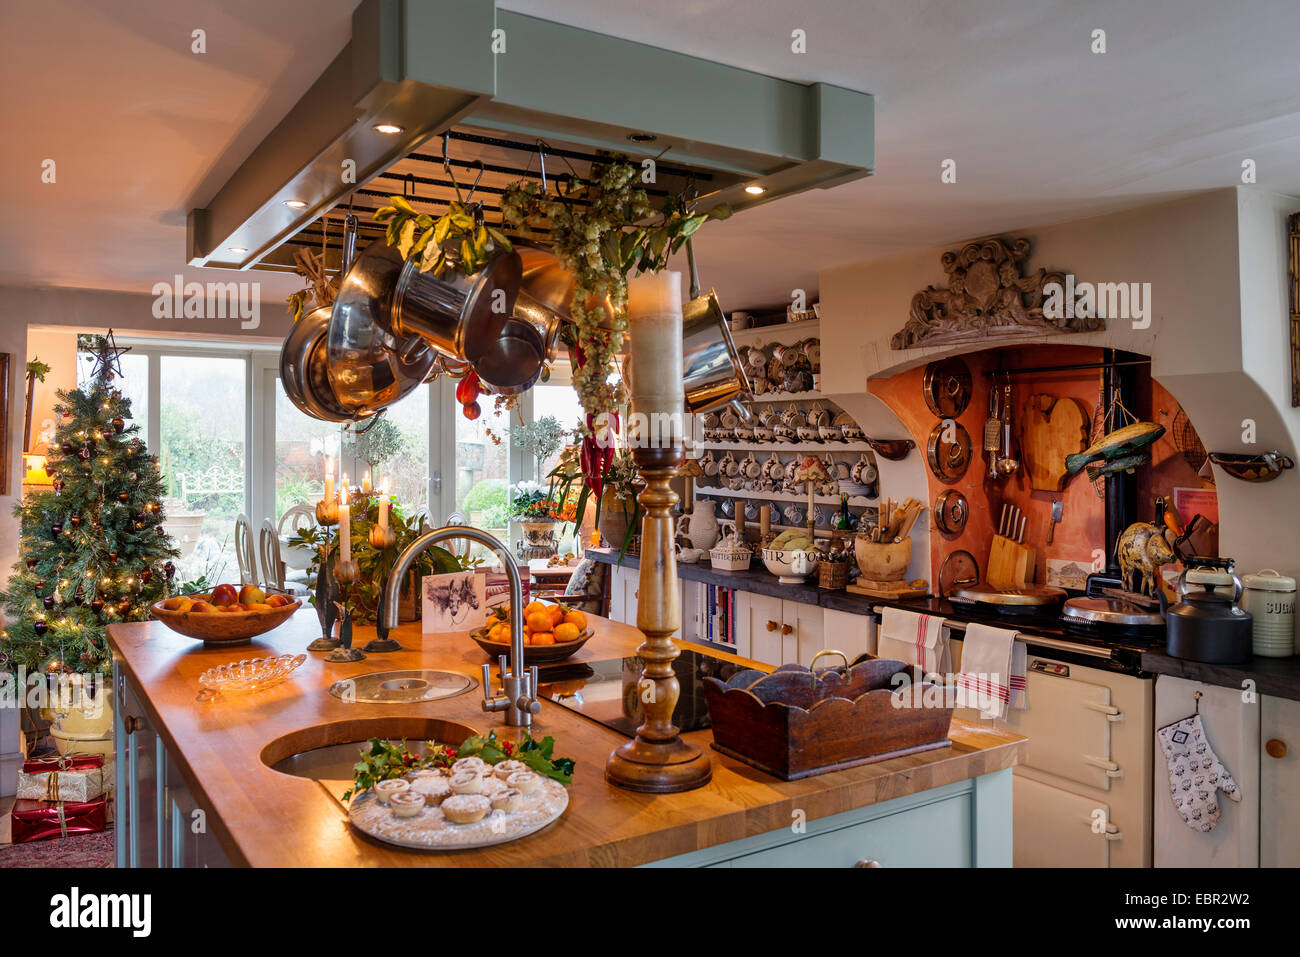 Albero Di Natale Kitchen.Paese Accogliente Cucina Con Aga Macellai Isola Cassettiera E Albero Di Natale Foto Stock Alamy